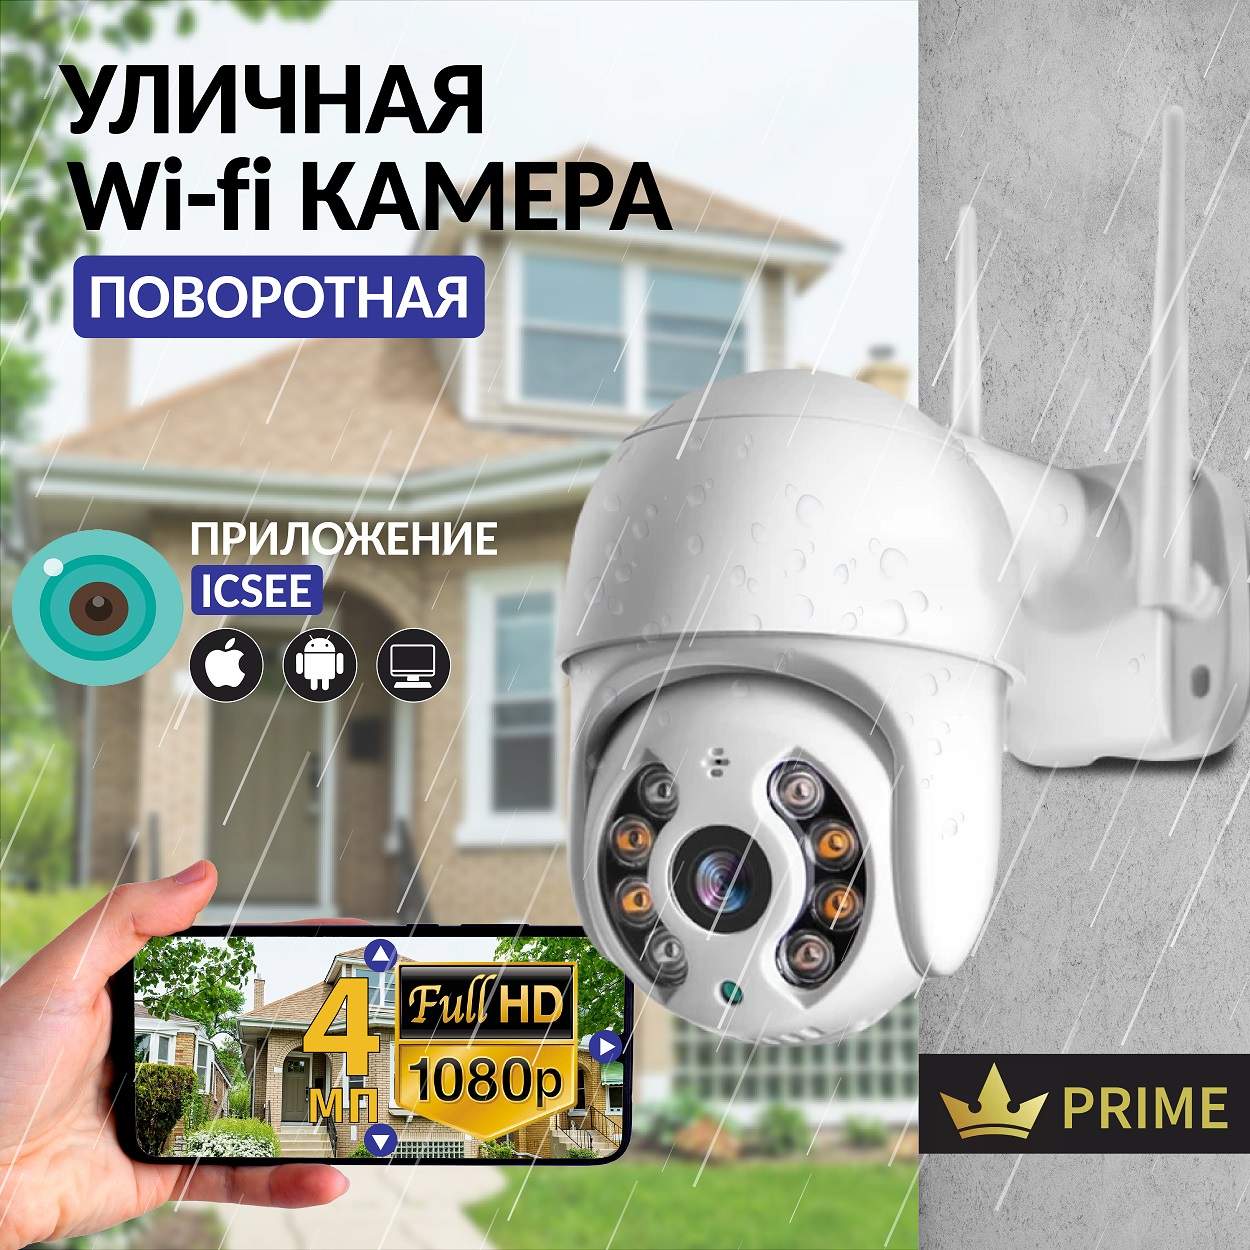 Камера видеонаблюдения IP VG-1360 Wifi уличная поворотная 4 Мп, VVG6986328 уличная беспроводная ip камера наблюдения wifi smart camera еа2506 2